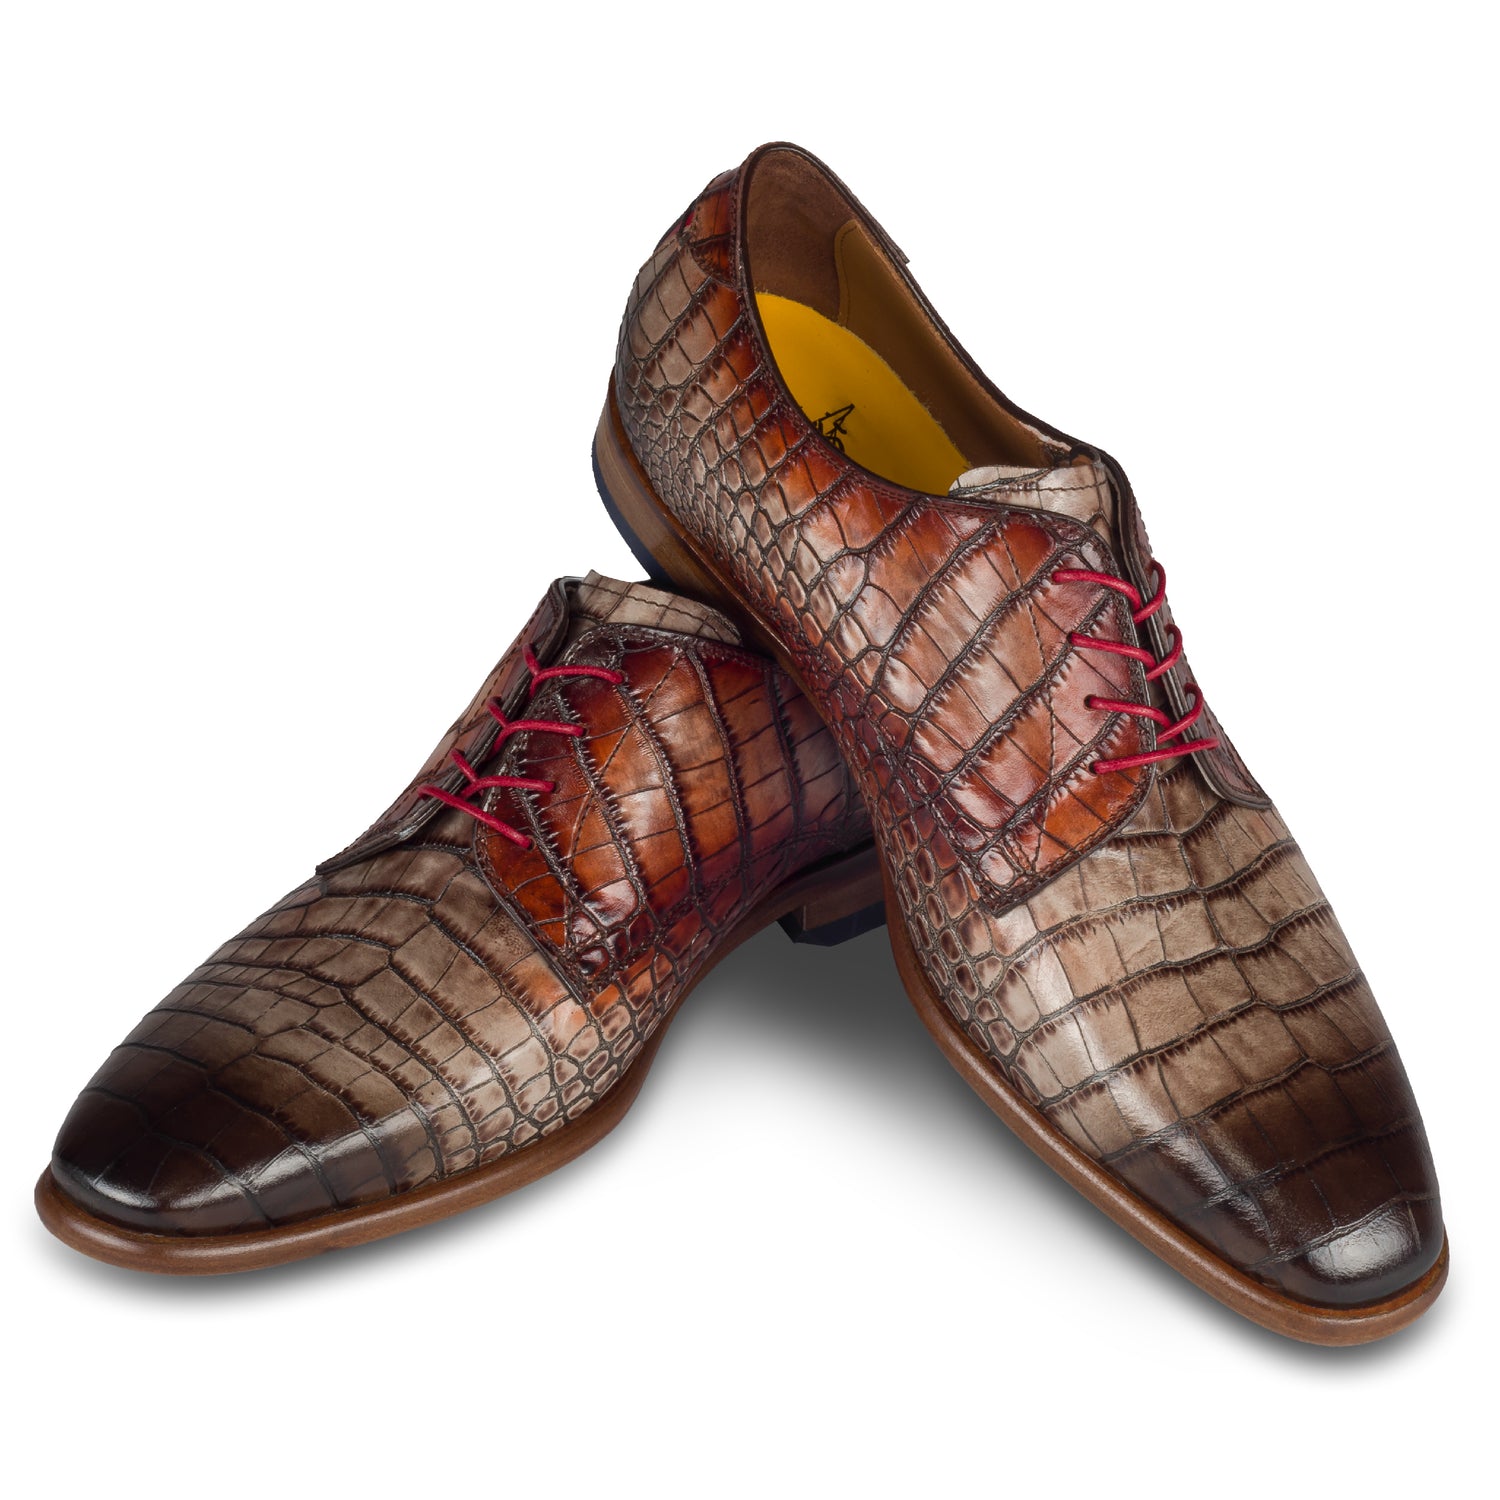 Lorenzi - Extravaganter Herren Derby Schnürschuh aus Kalbsleder in Reptil-Optik schwarz-grau/rot. Handgefertigt und Durchgenäht. Paarweise Ansicht Schuhe überkreuzt aufgestellt.